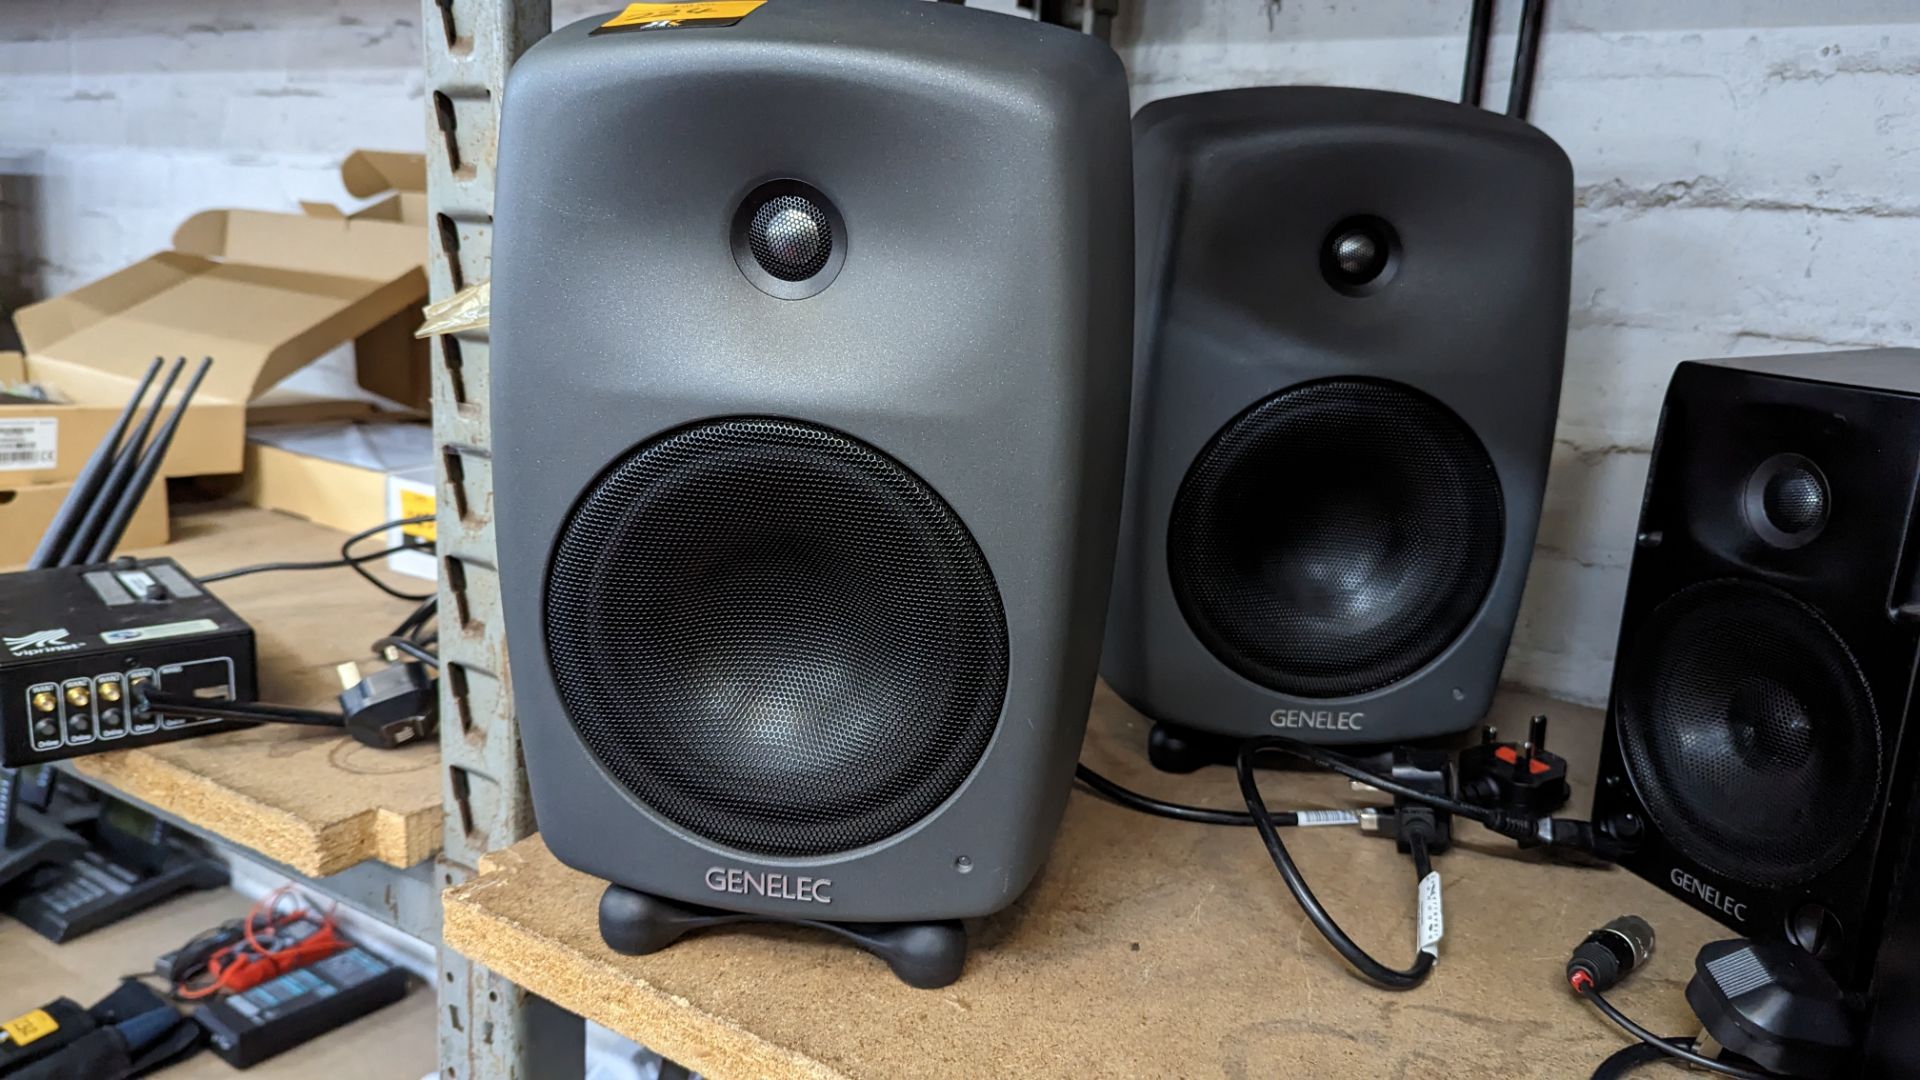 Pair of Genelec model 8040B bi-amplified monitors/speakers. Each speaker includes a desktop stand